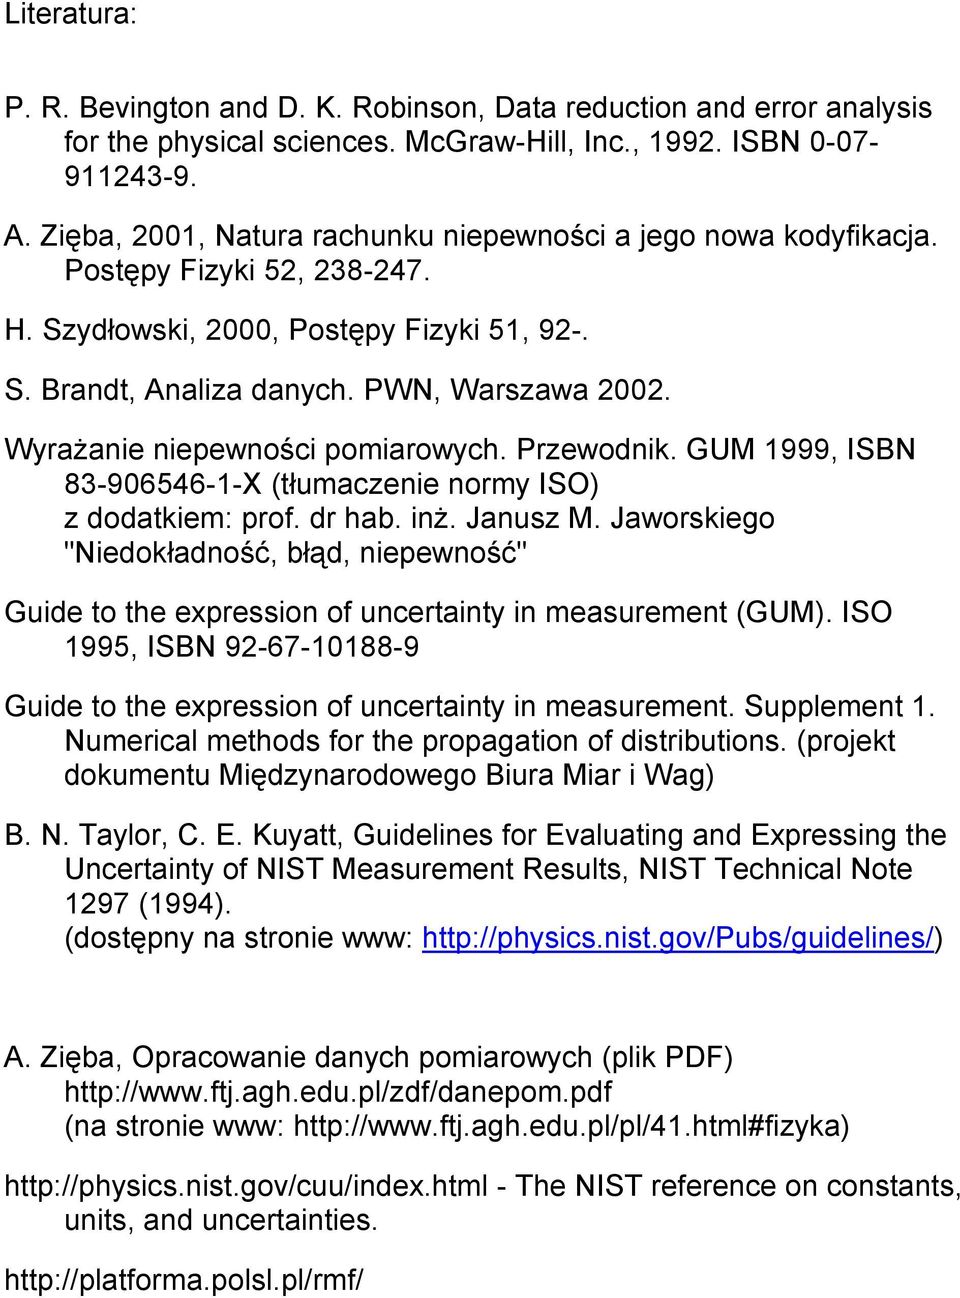 Wyrażanie niepewności pomiarowych. Przewodnik. GUM 1999, ISBN 83-906546-1-X (tłumaczenie normy ISO) z dodatkiem: prof. dr hab. inż. Janusz M.